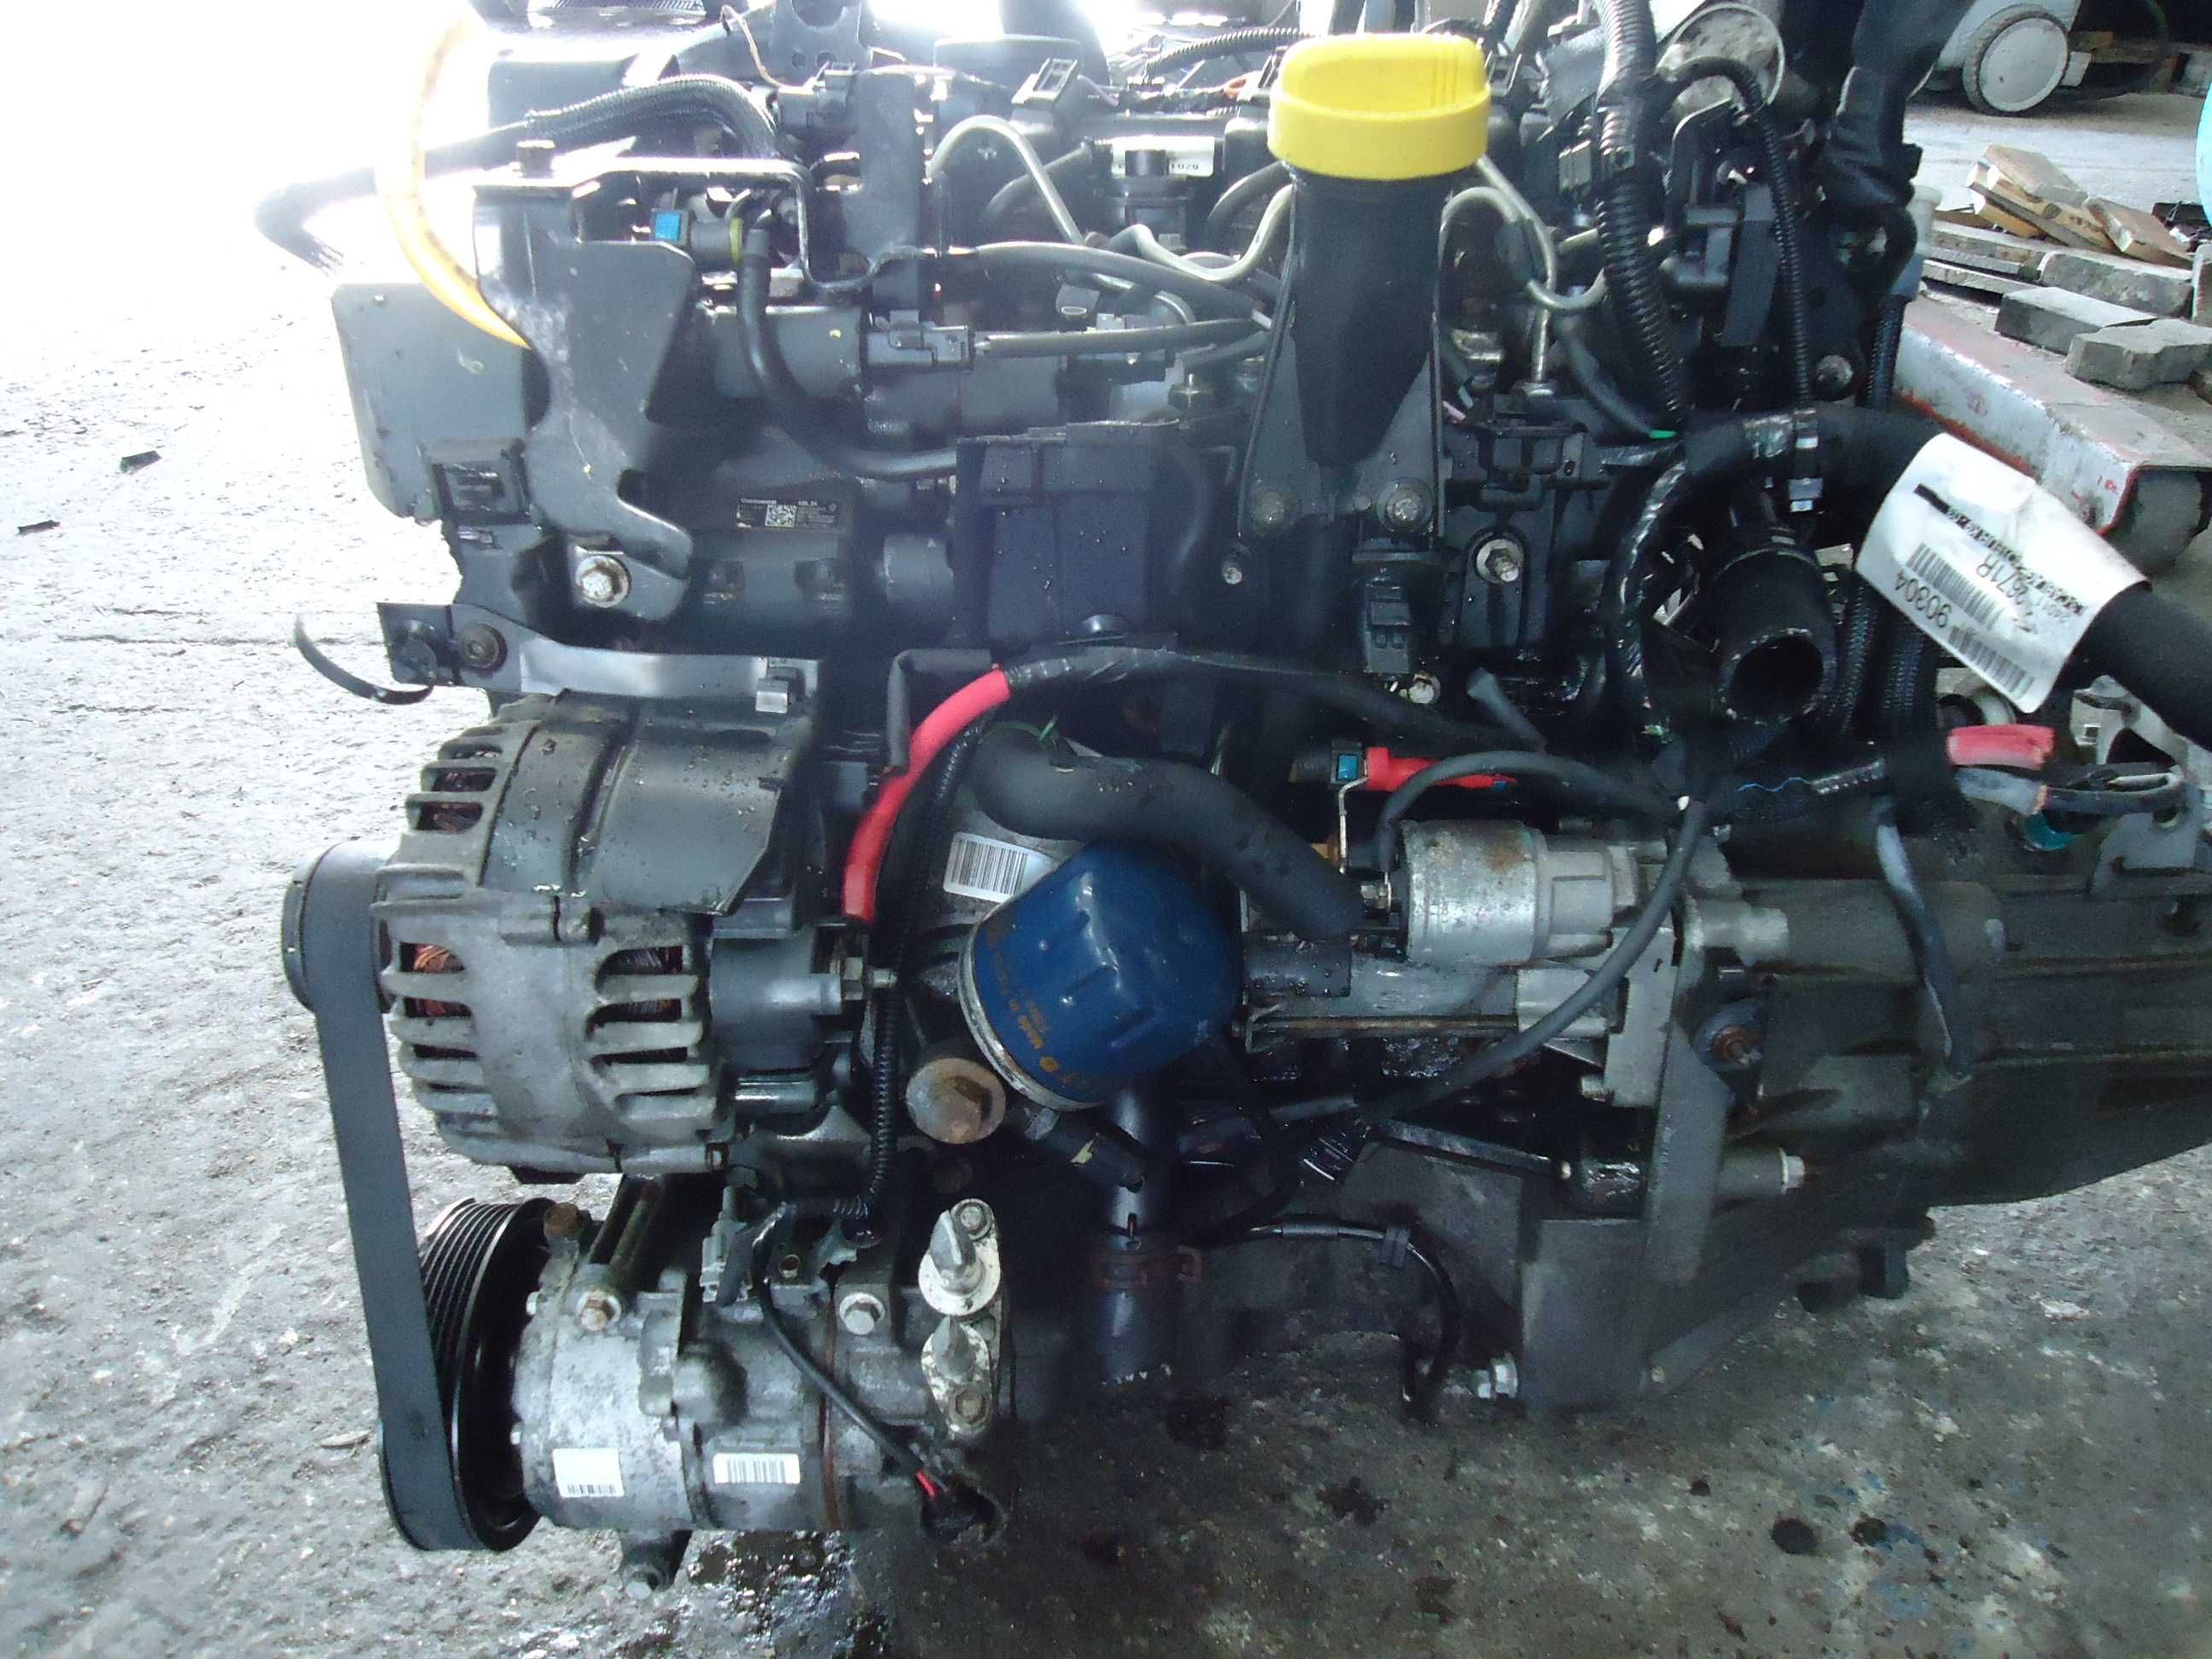 Motor Renault 1.5 Dci 110cv (K9K 836) injecção Siemens